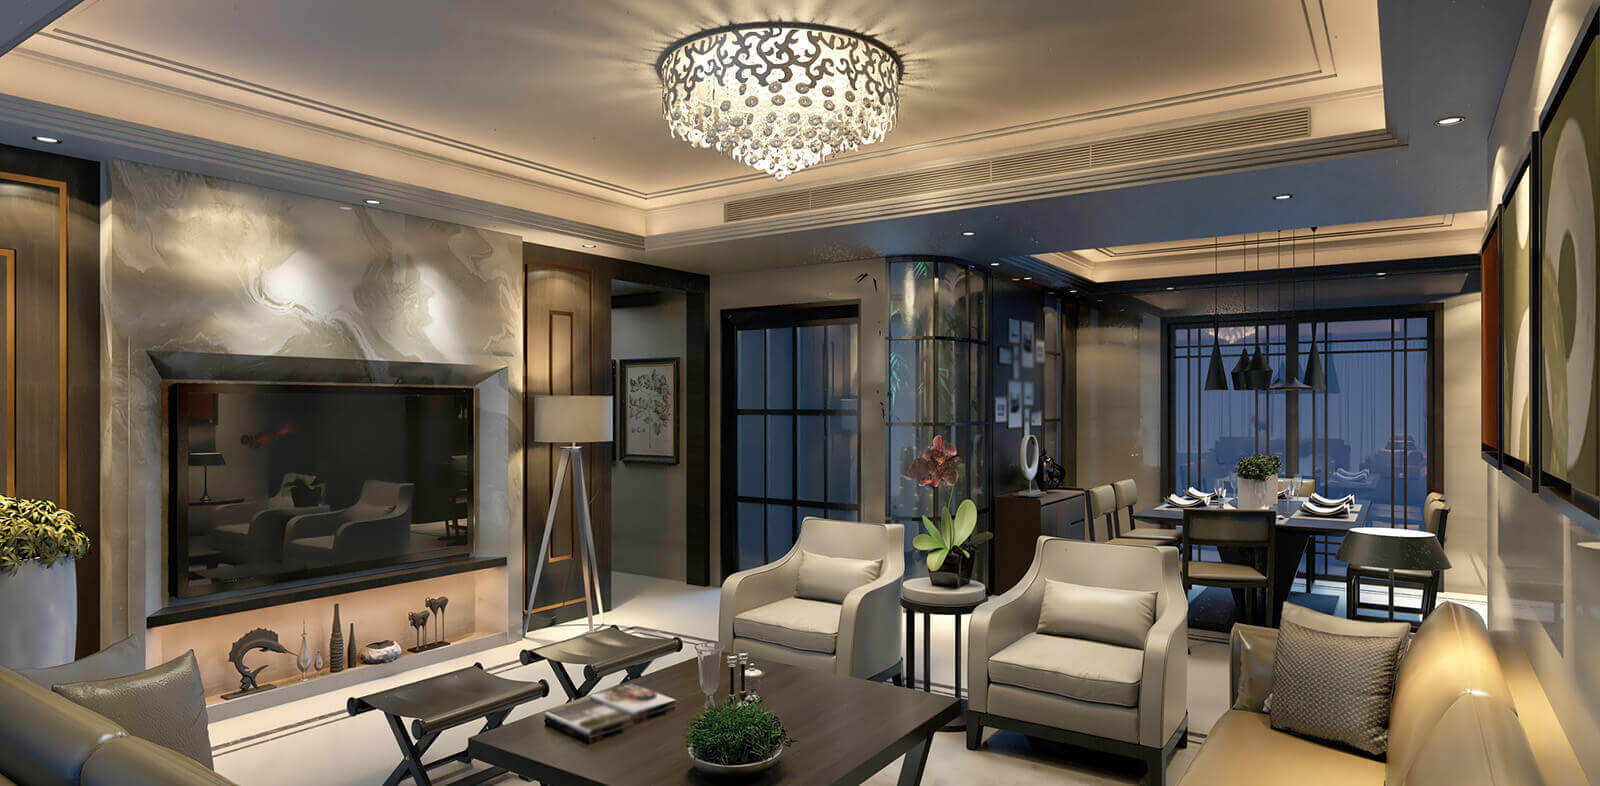 Florida luxury home interior design